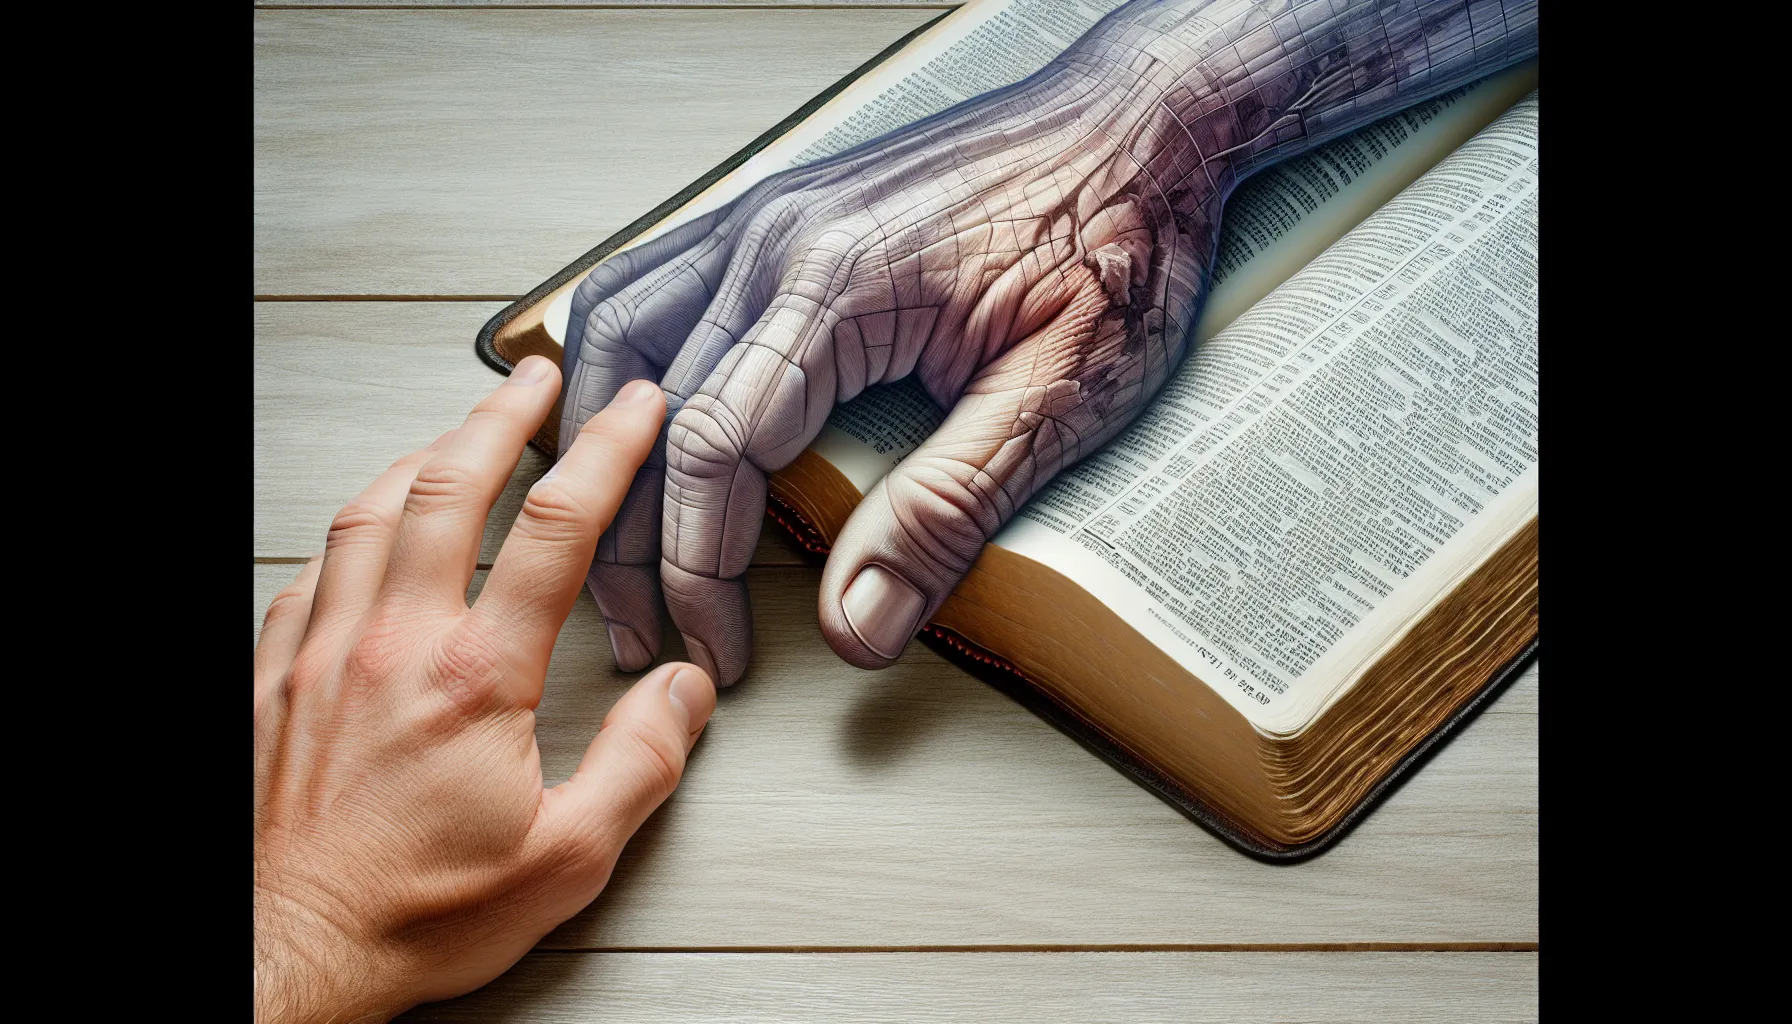 Imagen de un libro de la Biblia abierto con una mano sobre él